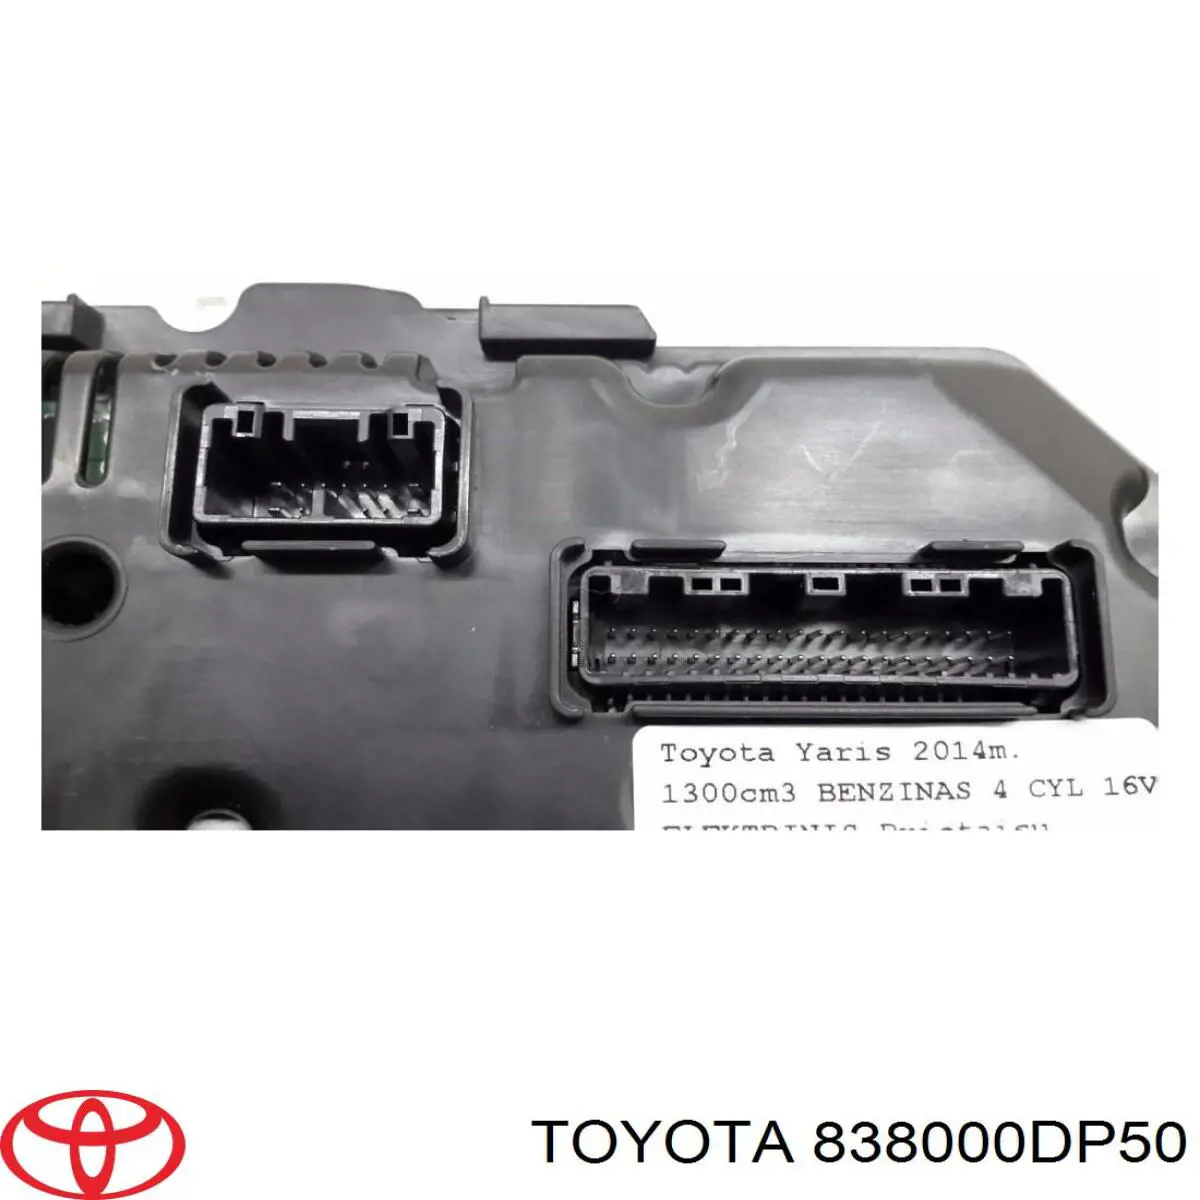 838000DP50 Toyota tablero de instrumentos (panel de instrumentos)